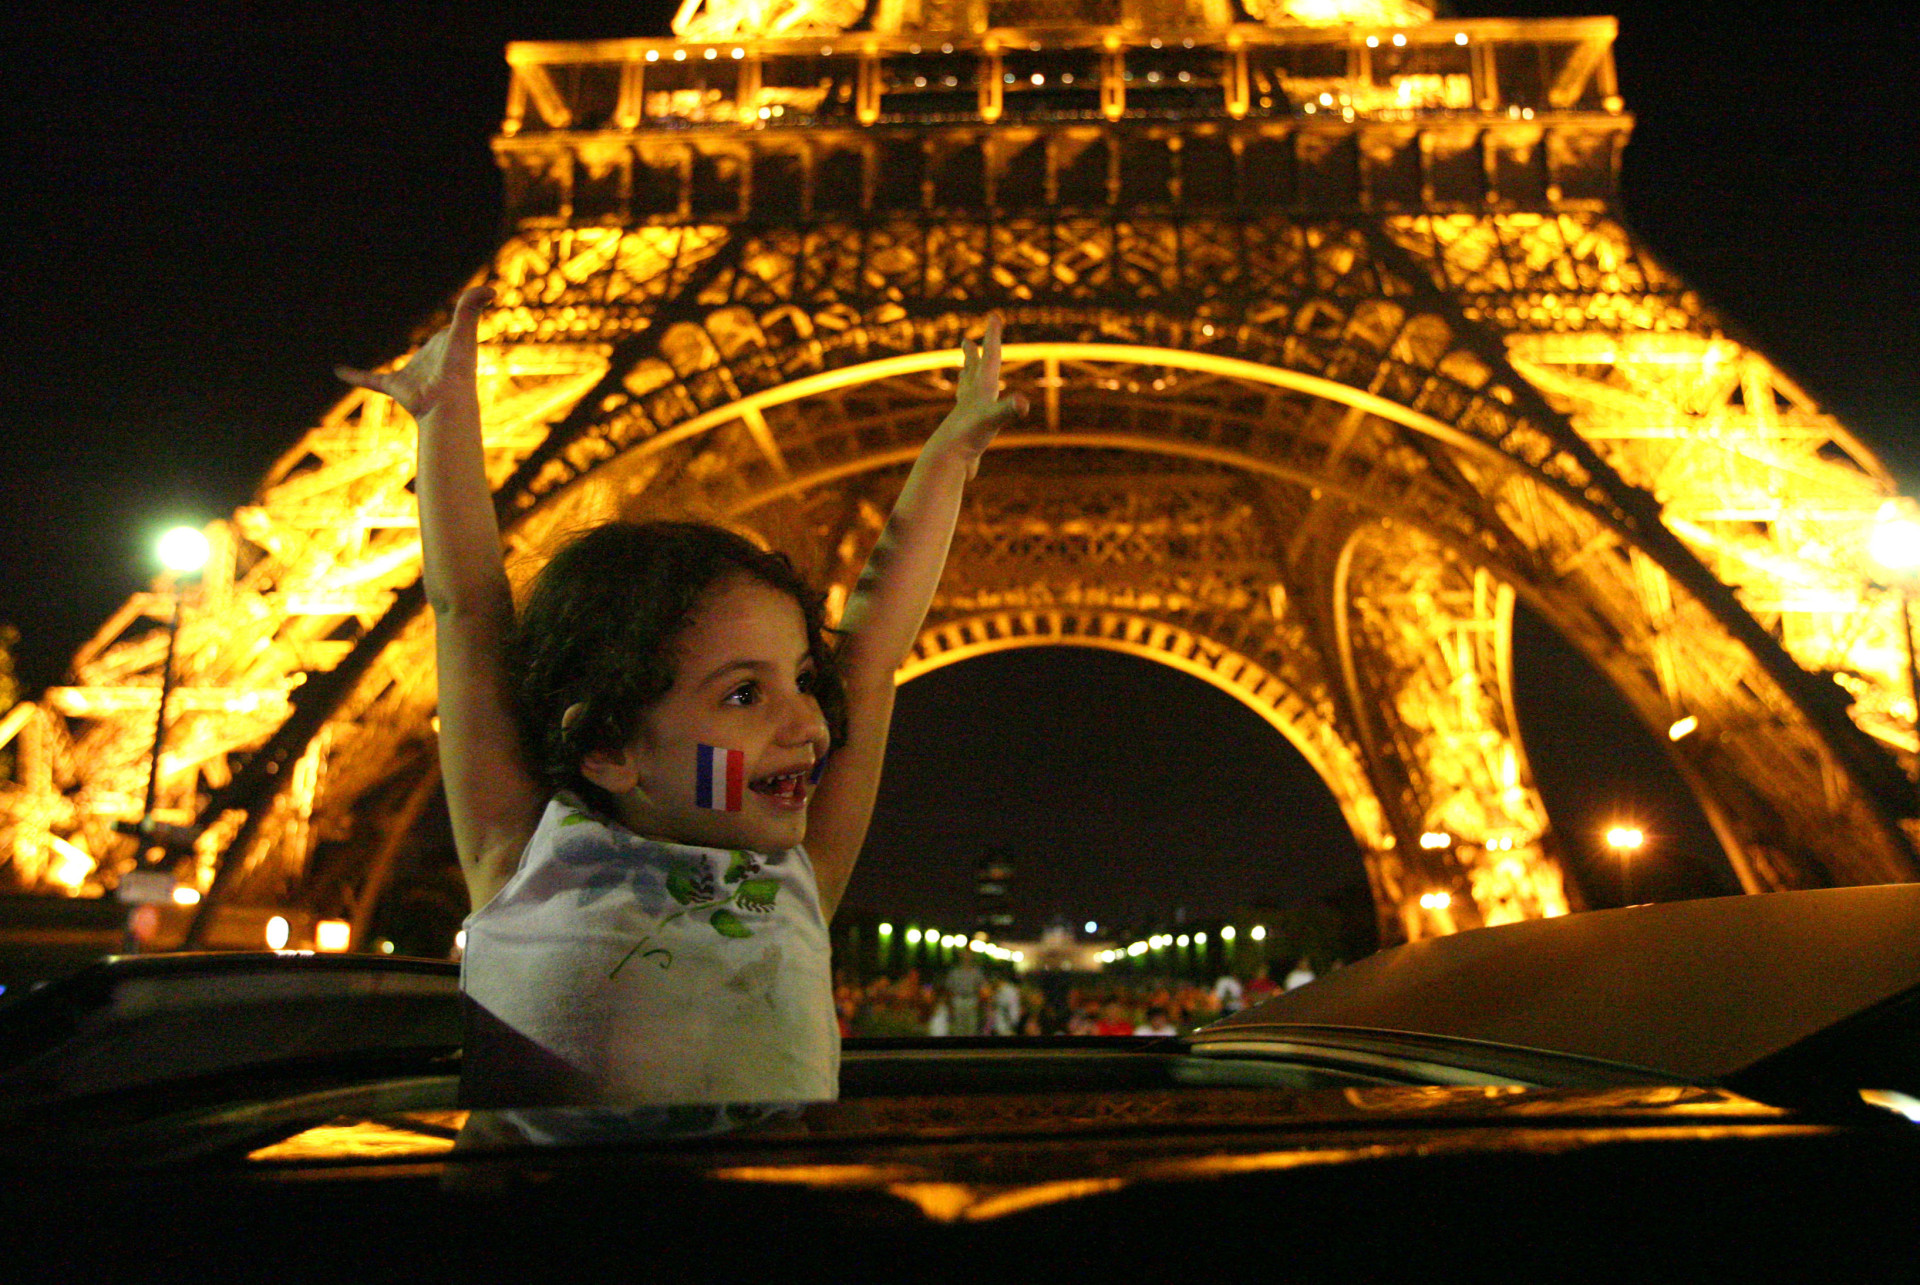 En plus de ces fonctions scientifiques, la Tour Eiffel est aux premières loges des plus grands événements se déroulant à Paris, comme la victoire de la coupe du monde 1998.<p>Tu pourrais aussi aimer:<a href="https://www.starsinsider.com/n/390263?utm_source=msn.com&utm_medium=display&utm_campaign=referral_description&utm_content=144117v2"> Le meilleur et le pire d'Halle Berry</a></p>